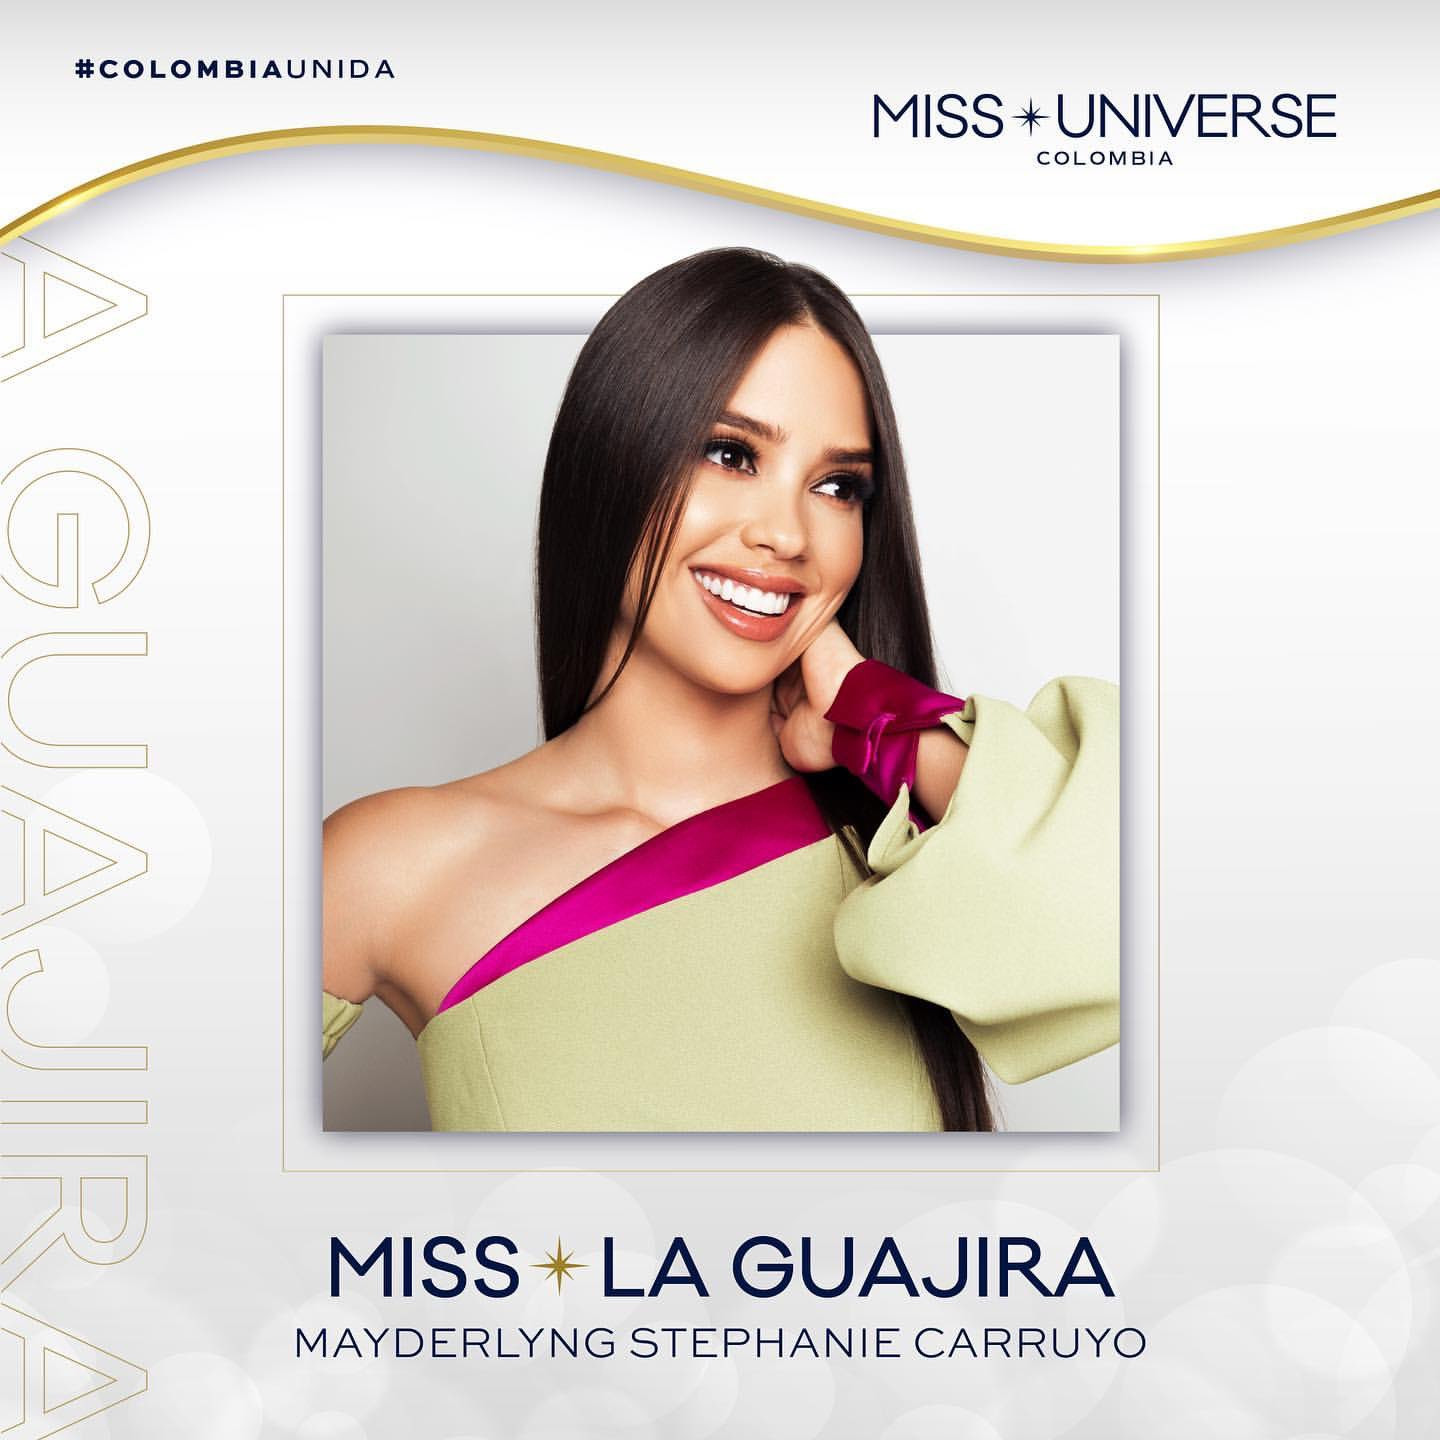 Estas son las 24 candidatas que competirán por la corona de Miss Universe Colombia 2023 - Página 2 DOYIZx